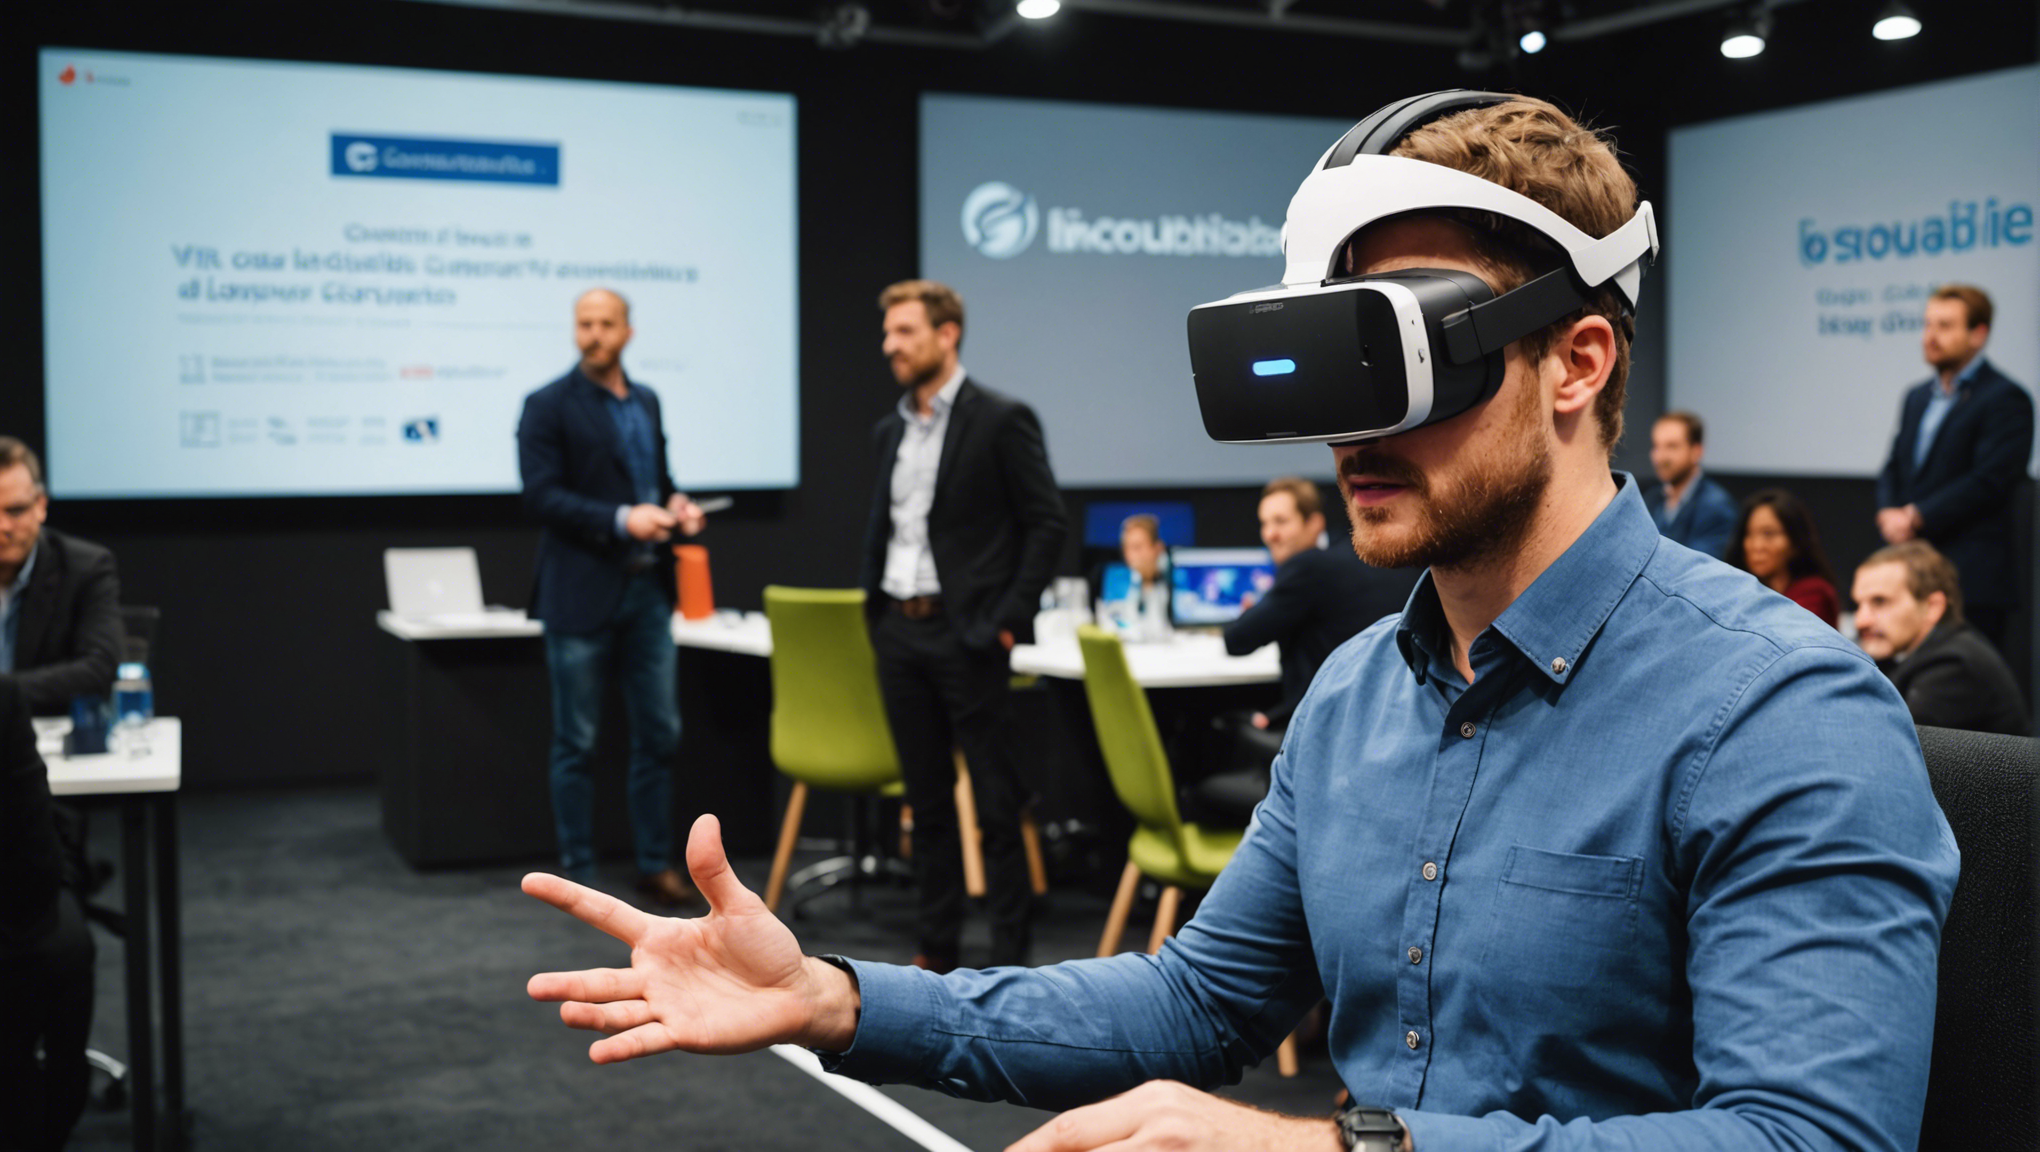 découvrez comment rendre votre conférence d'entreprise inoubliable en optant pour la location d'un simulateur de réalité virtuelle. offrez une expérience unique à vos participants et laissez une impression durable.